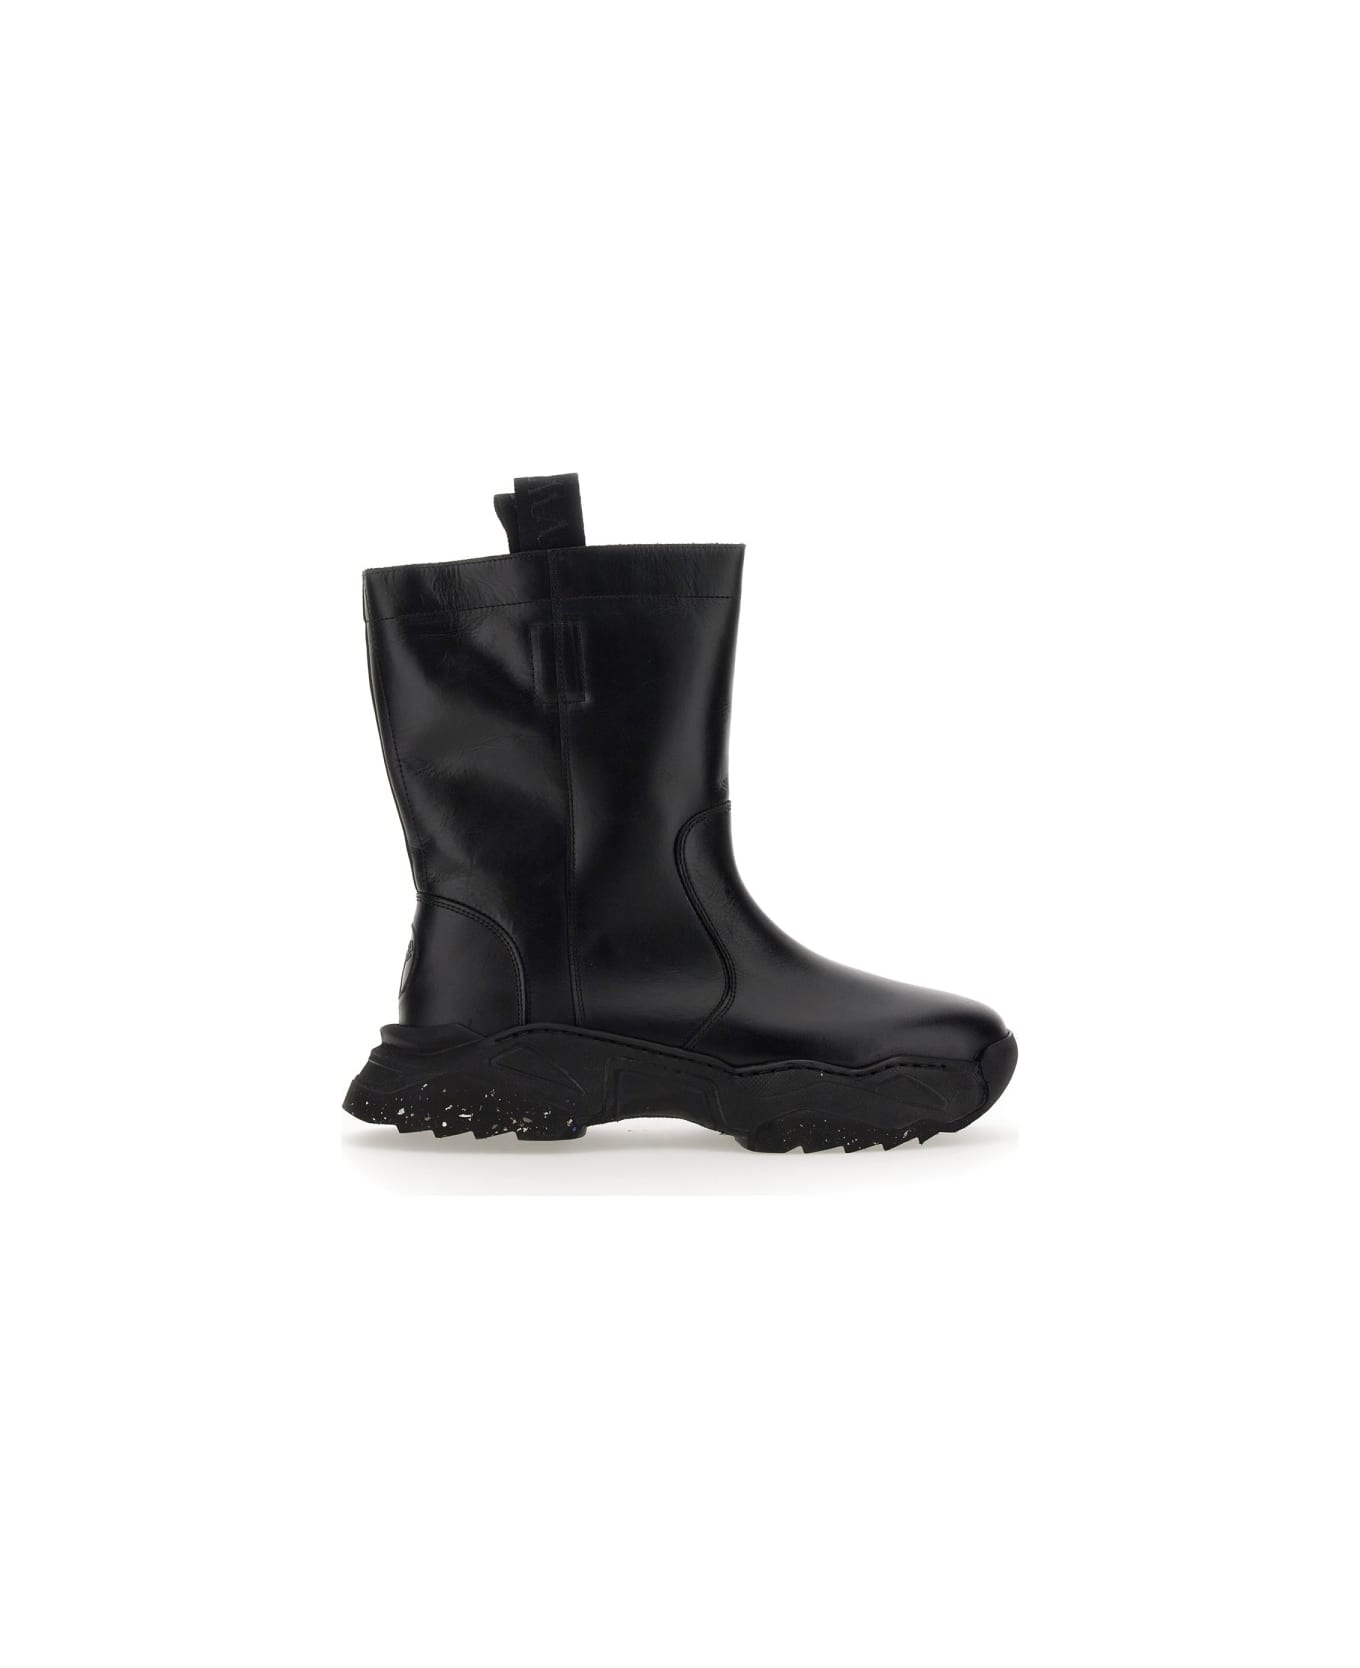 Vivienne Westwood Dealer Boot - BLACK ブーツ